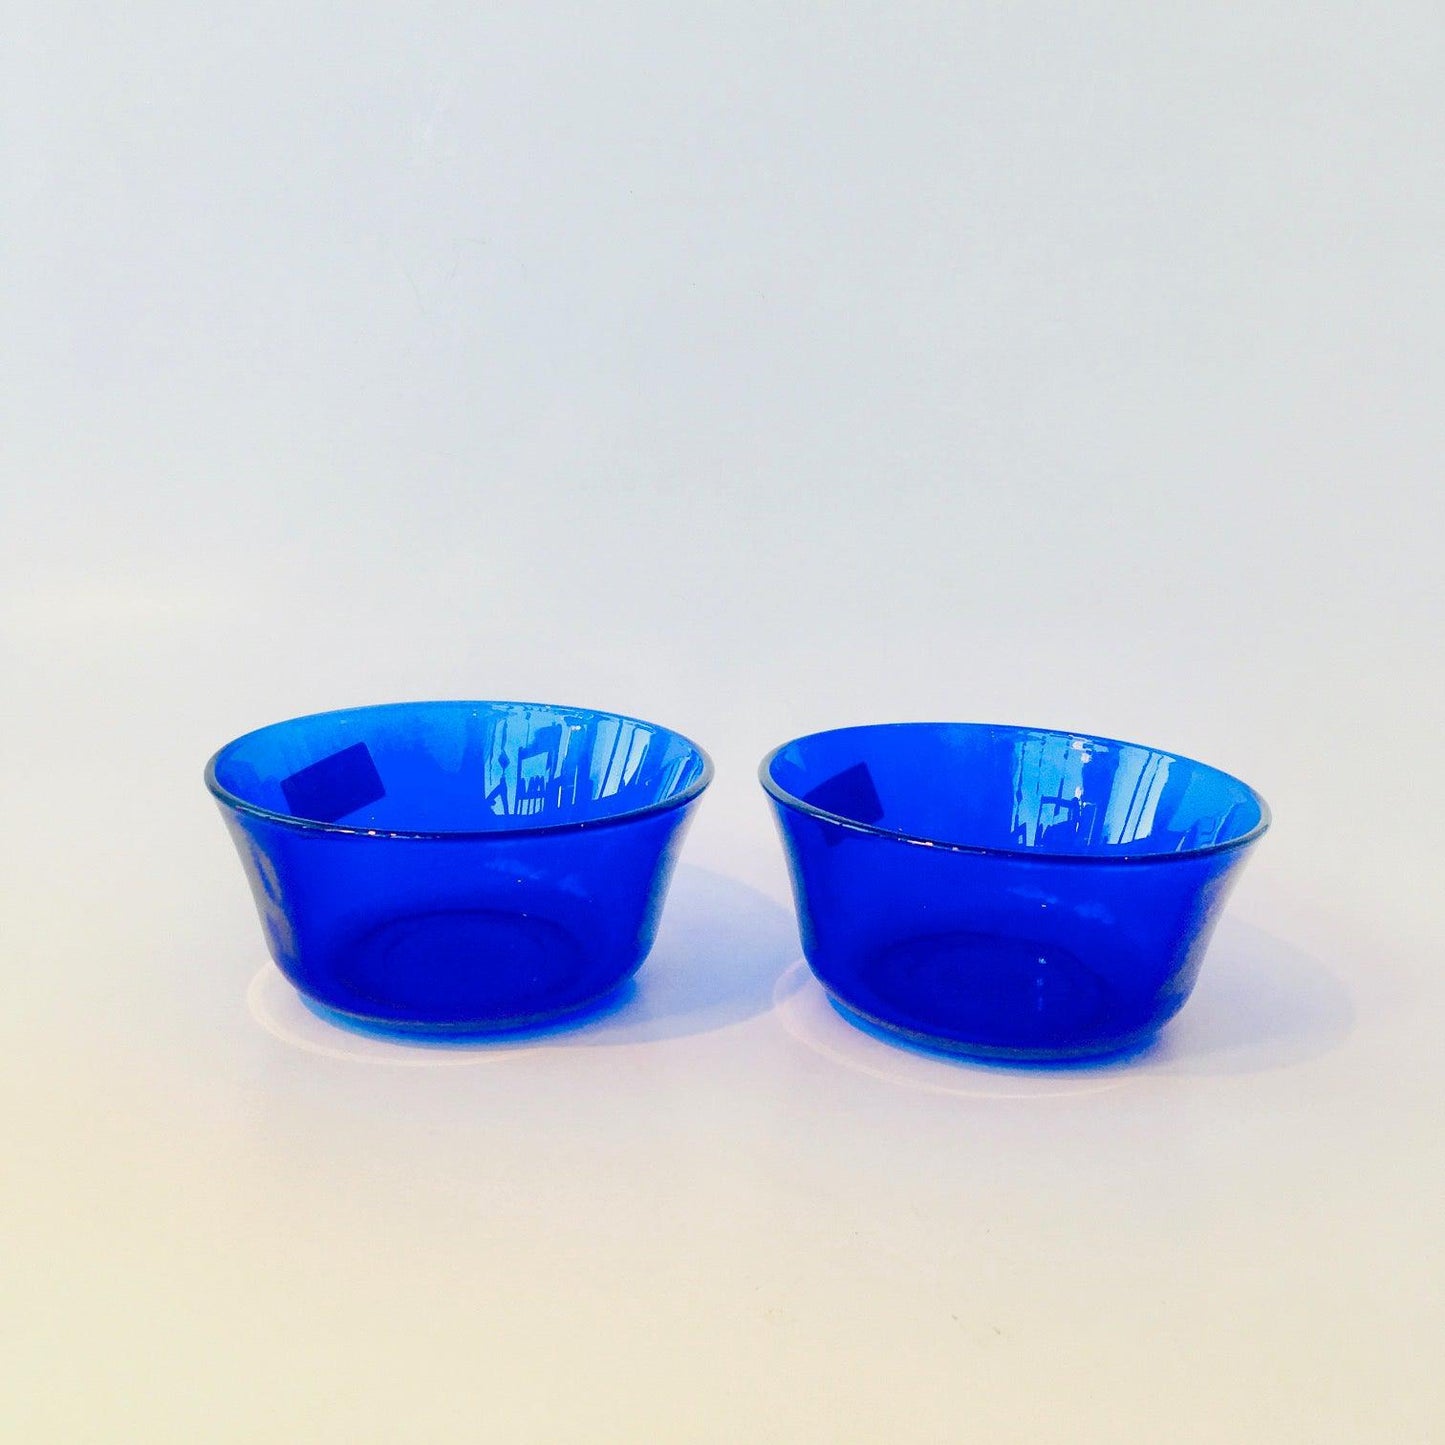 Glass Bowls Duralex Lys Saphir - Set of 4 Kitchen Duralex Prettycleanshop